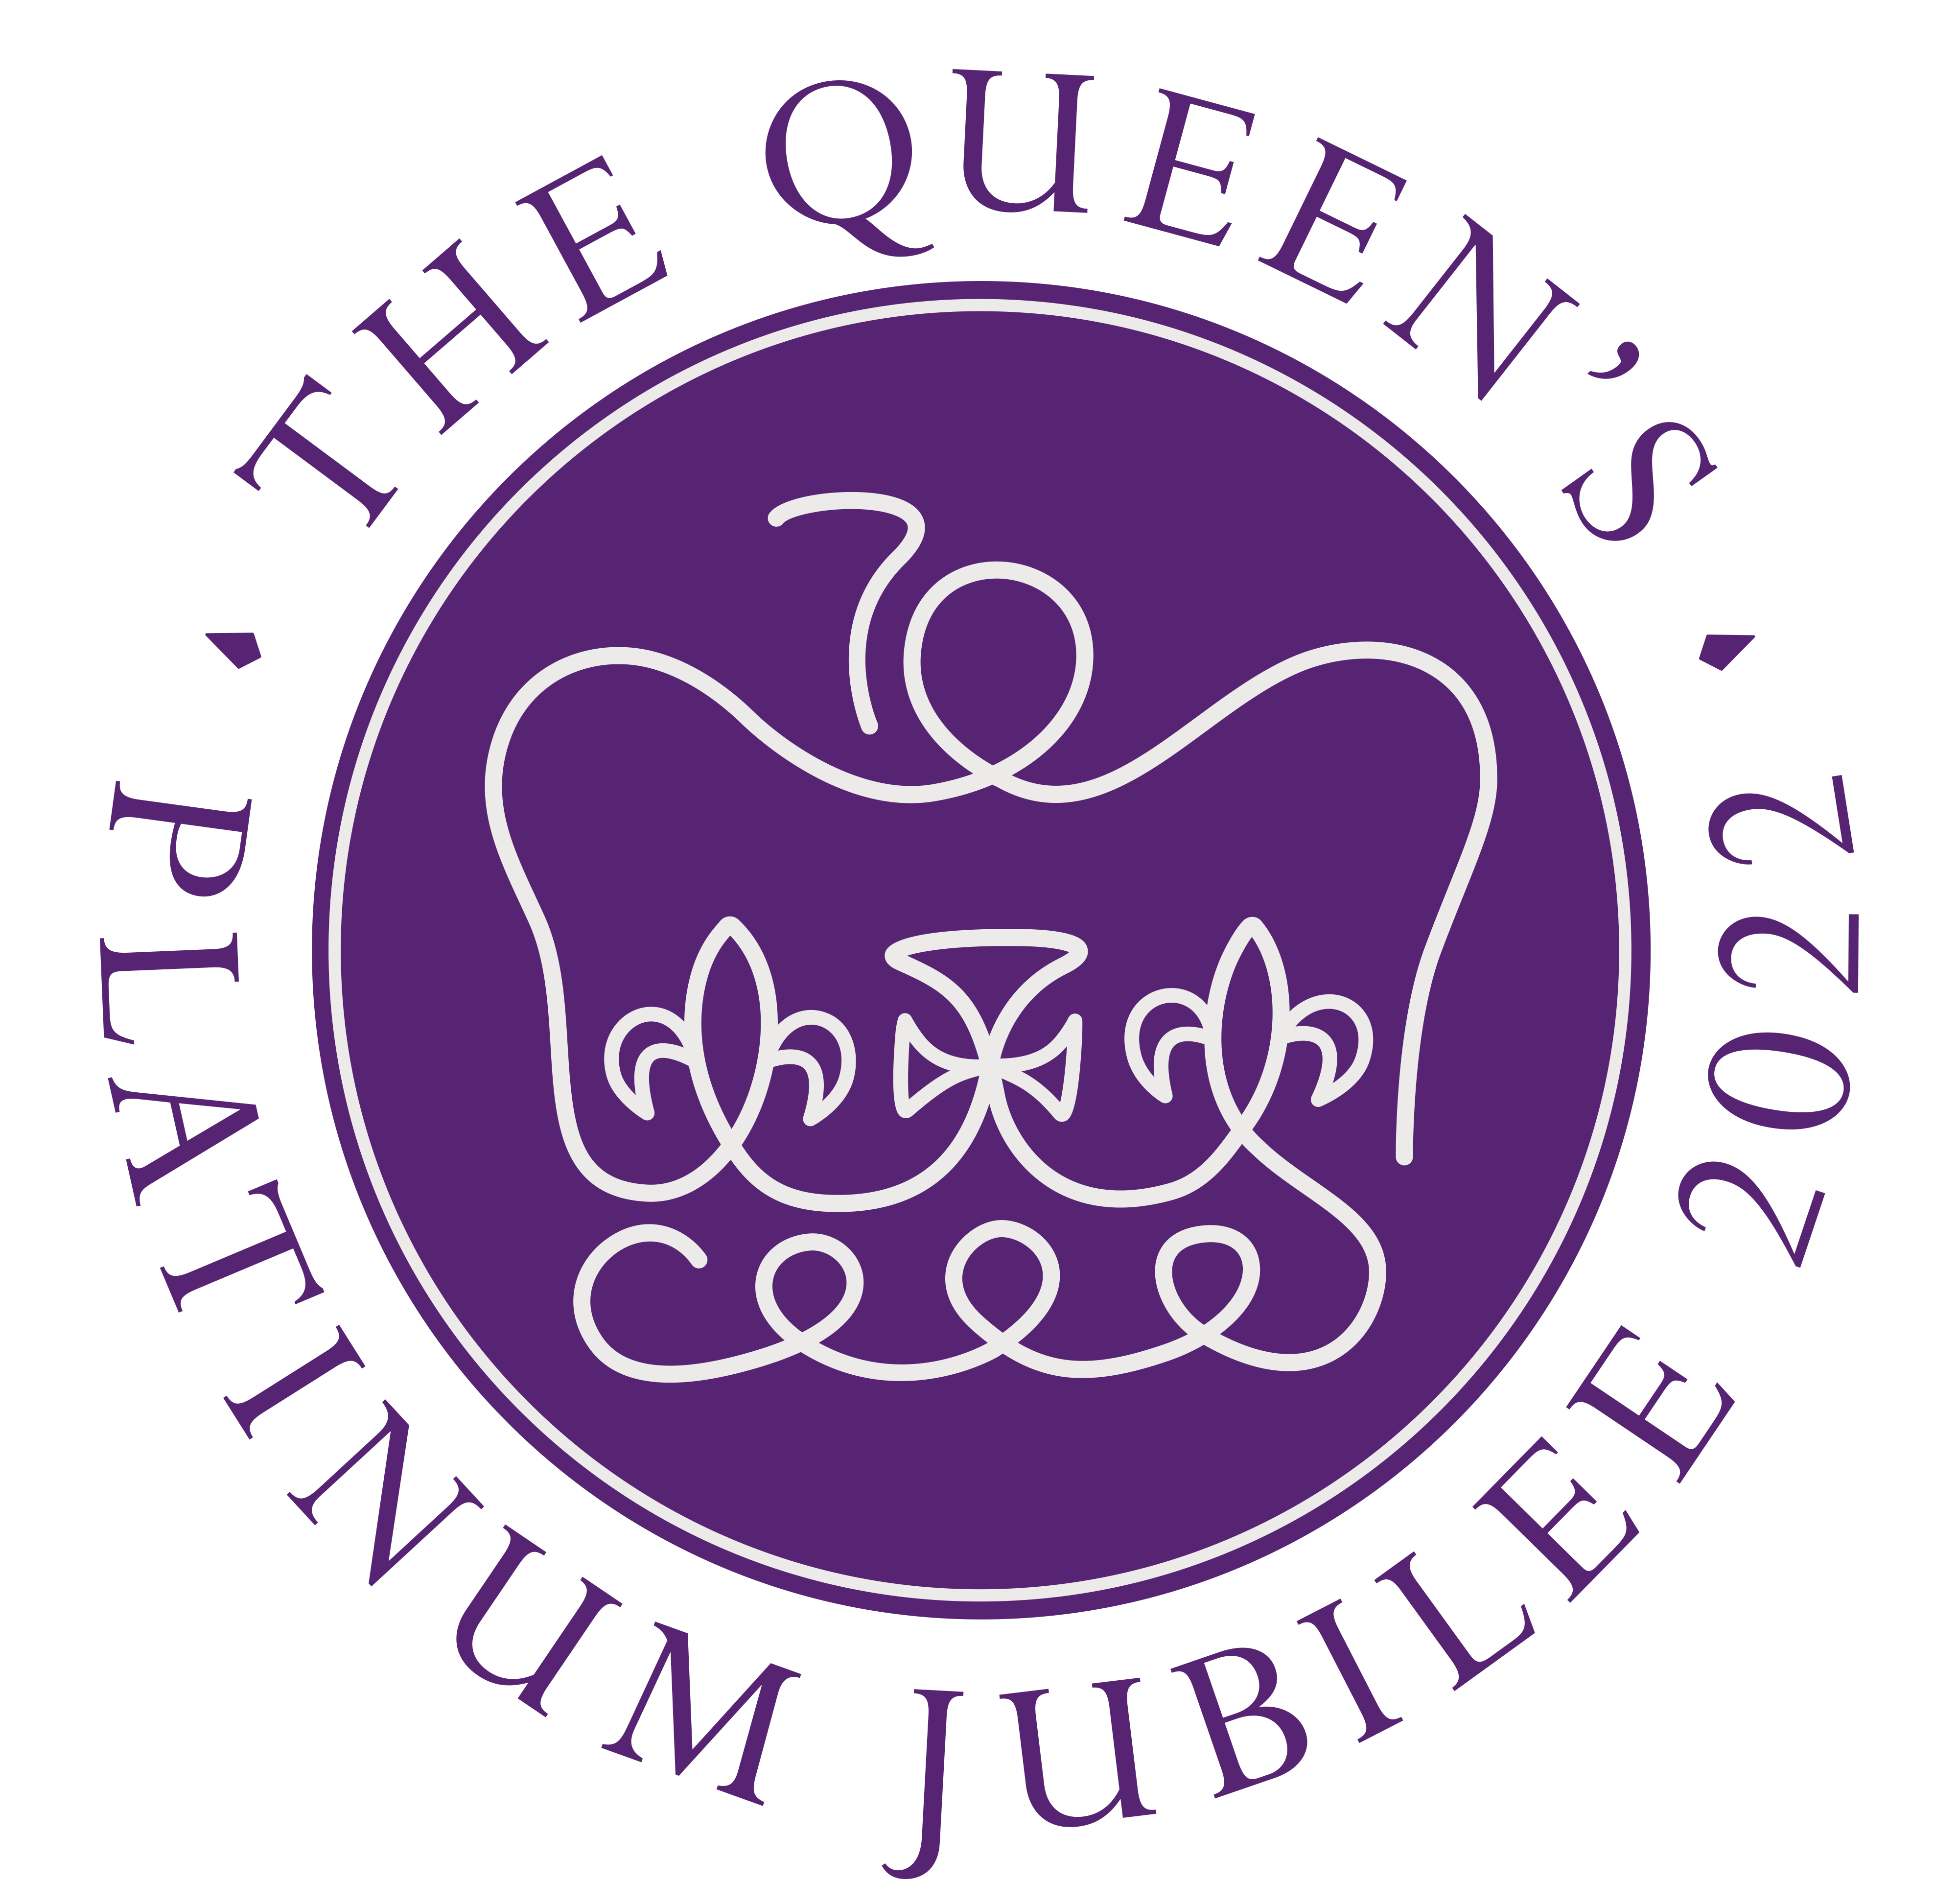 Queens Platinum Jubilee Logo 2022